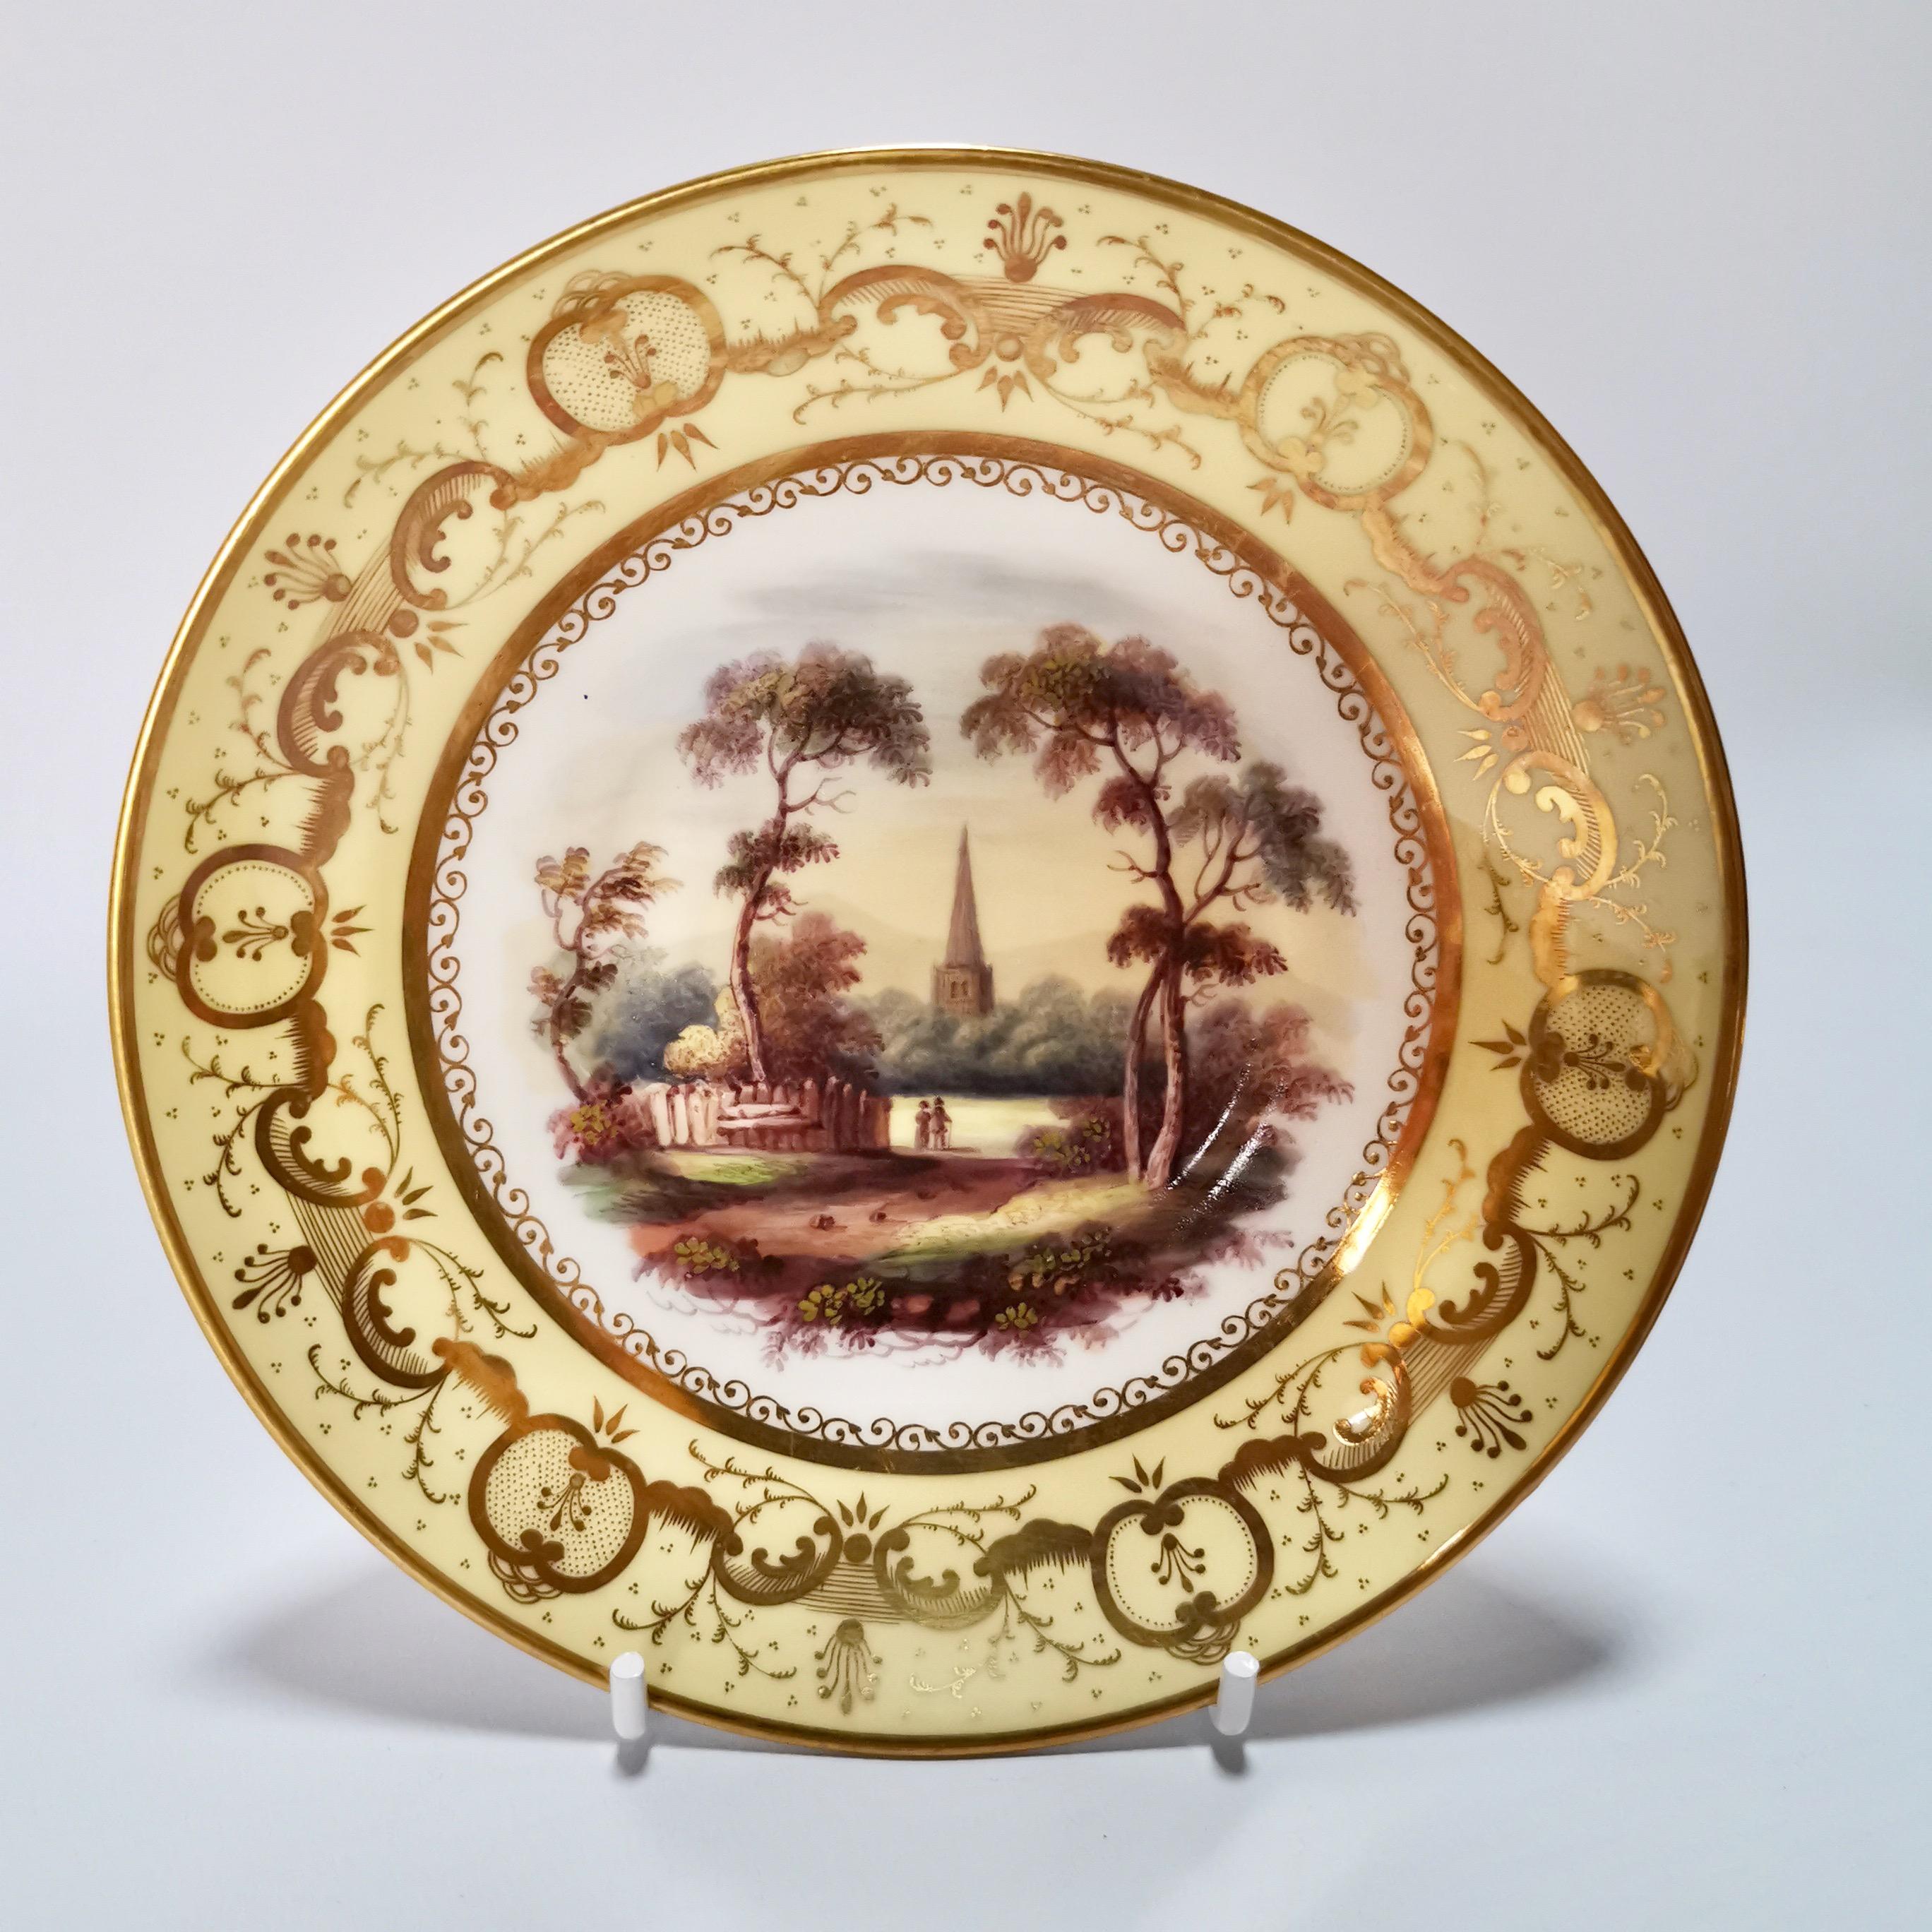 Minton Porcelain Tea Service, Yellow with Landscapes, Provenance Regency 1